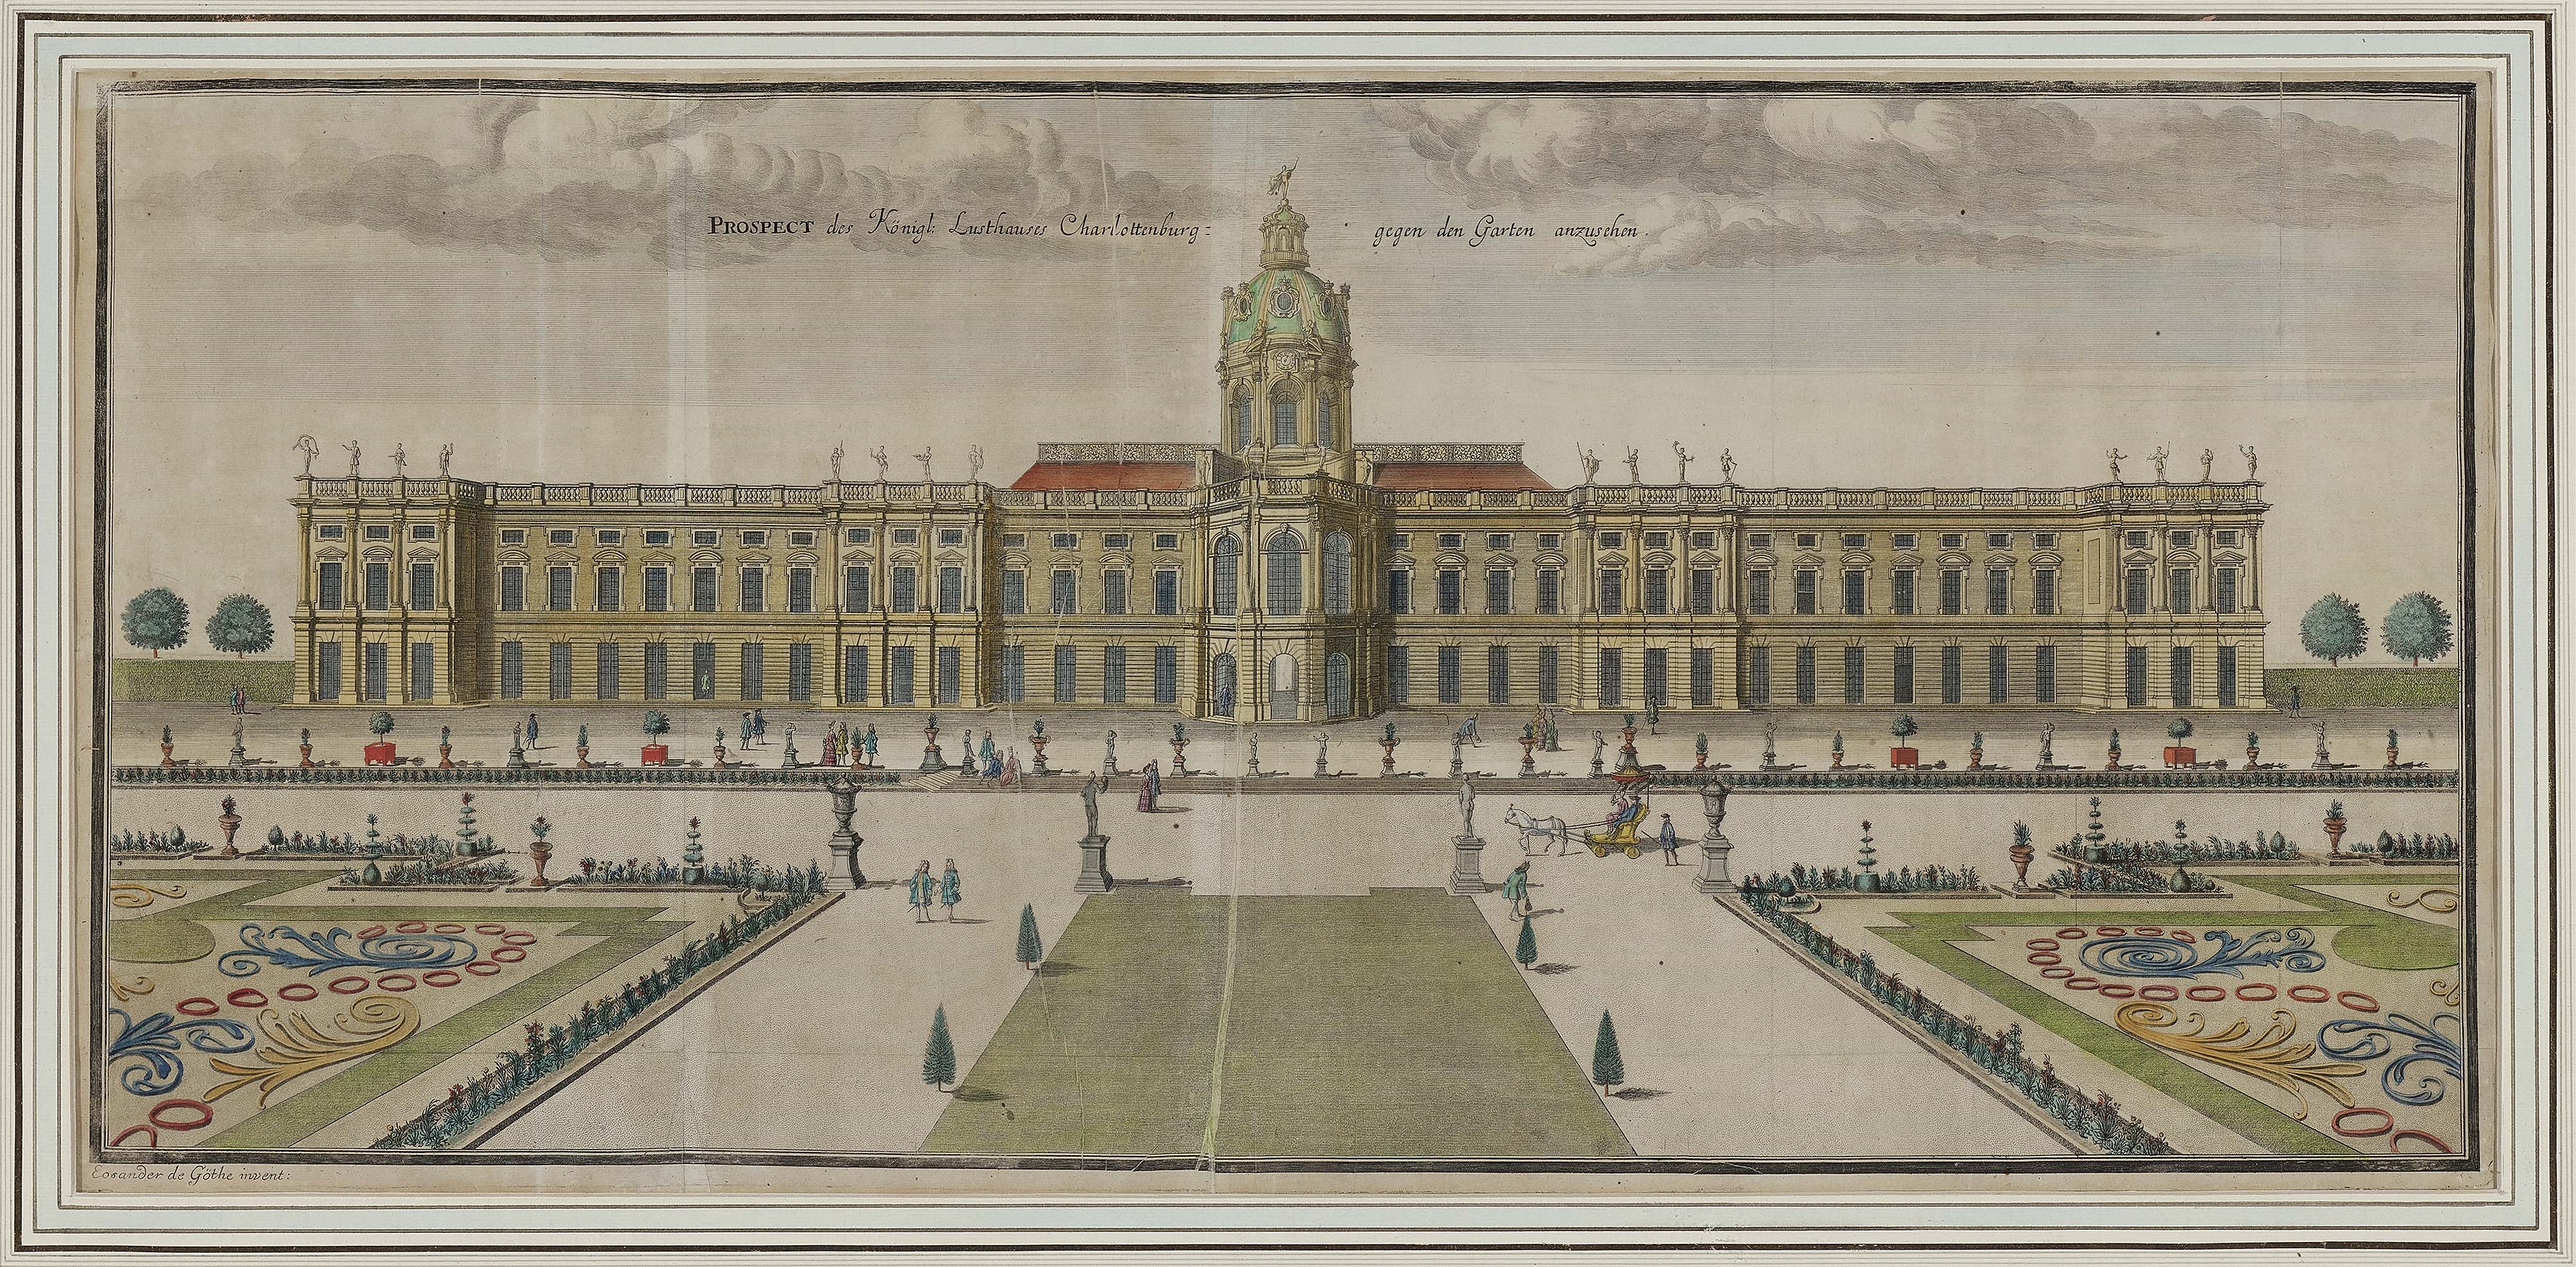 "Prospect des Königl. Lusthauses Charlottenburg gegen den Garten anzusehen" by Johann Friedrich Eosander